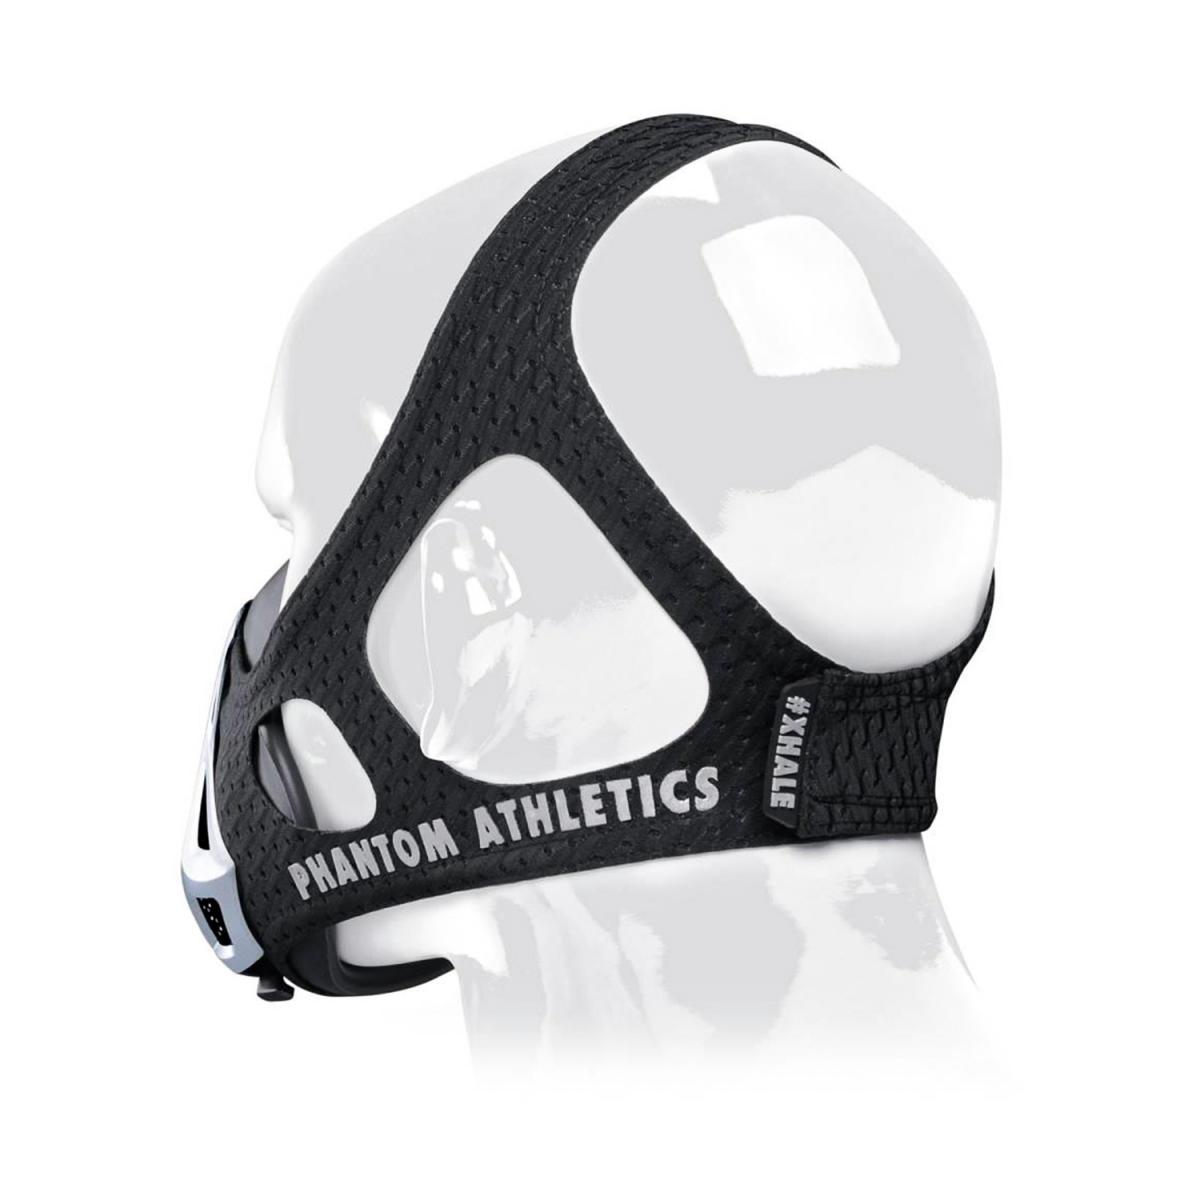 Тренировочная маска "Phantom Athletics" S812